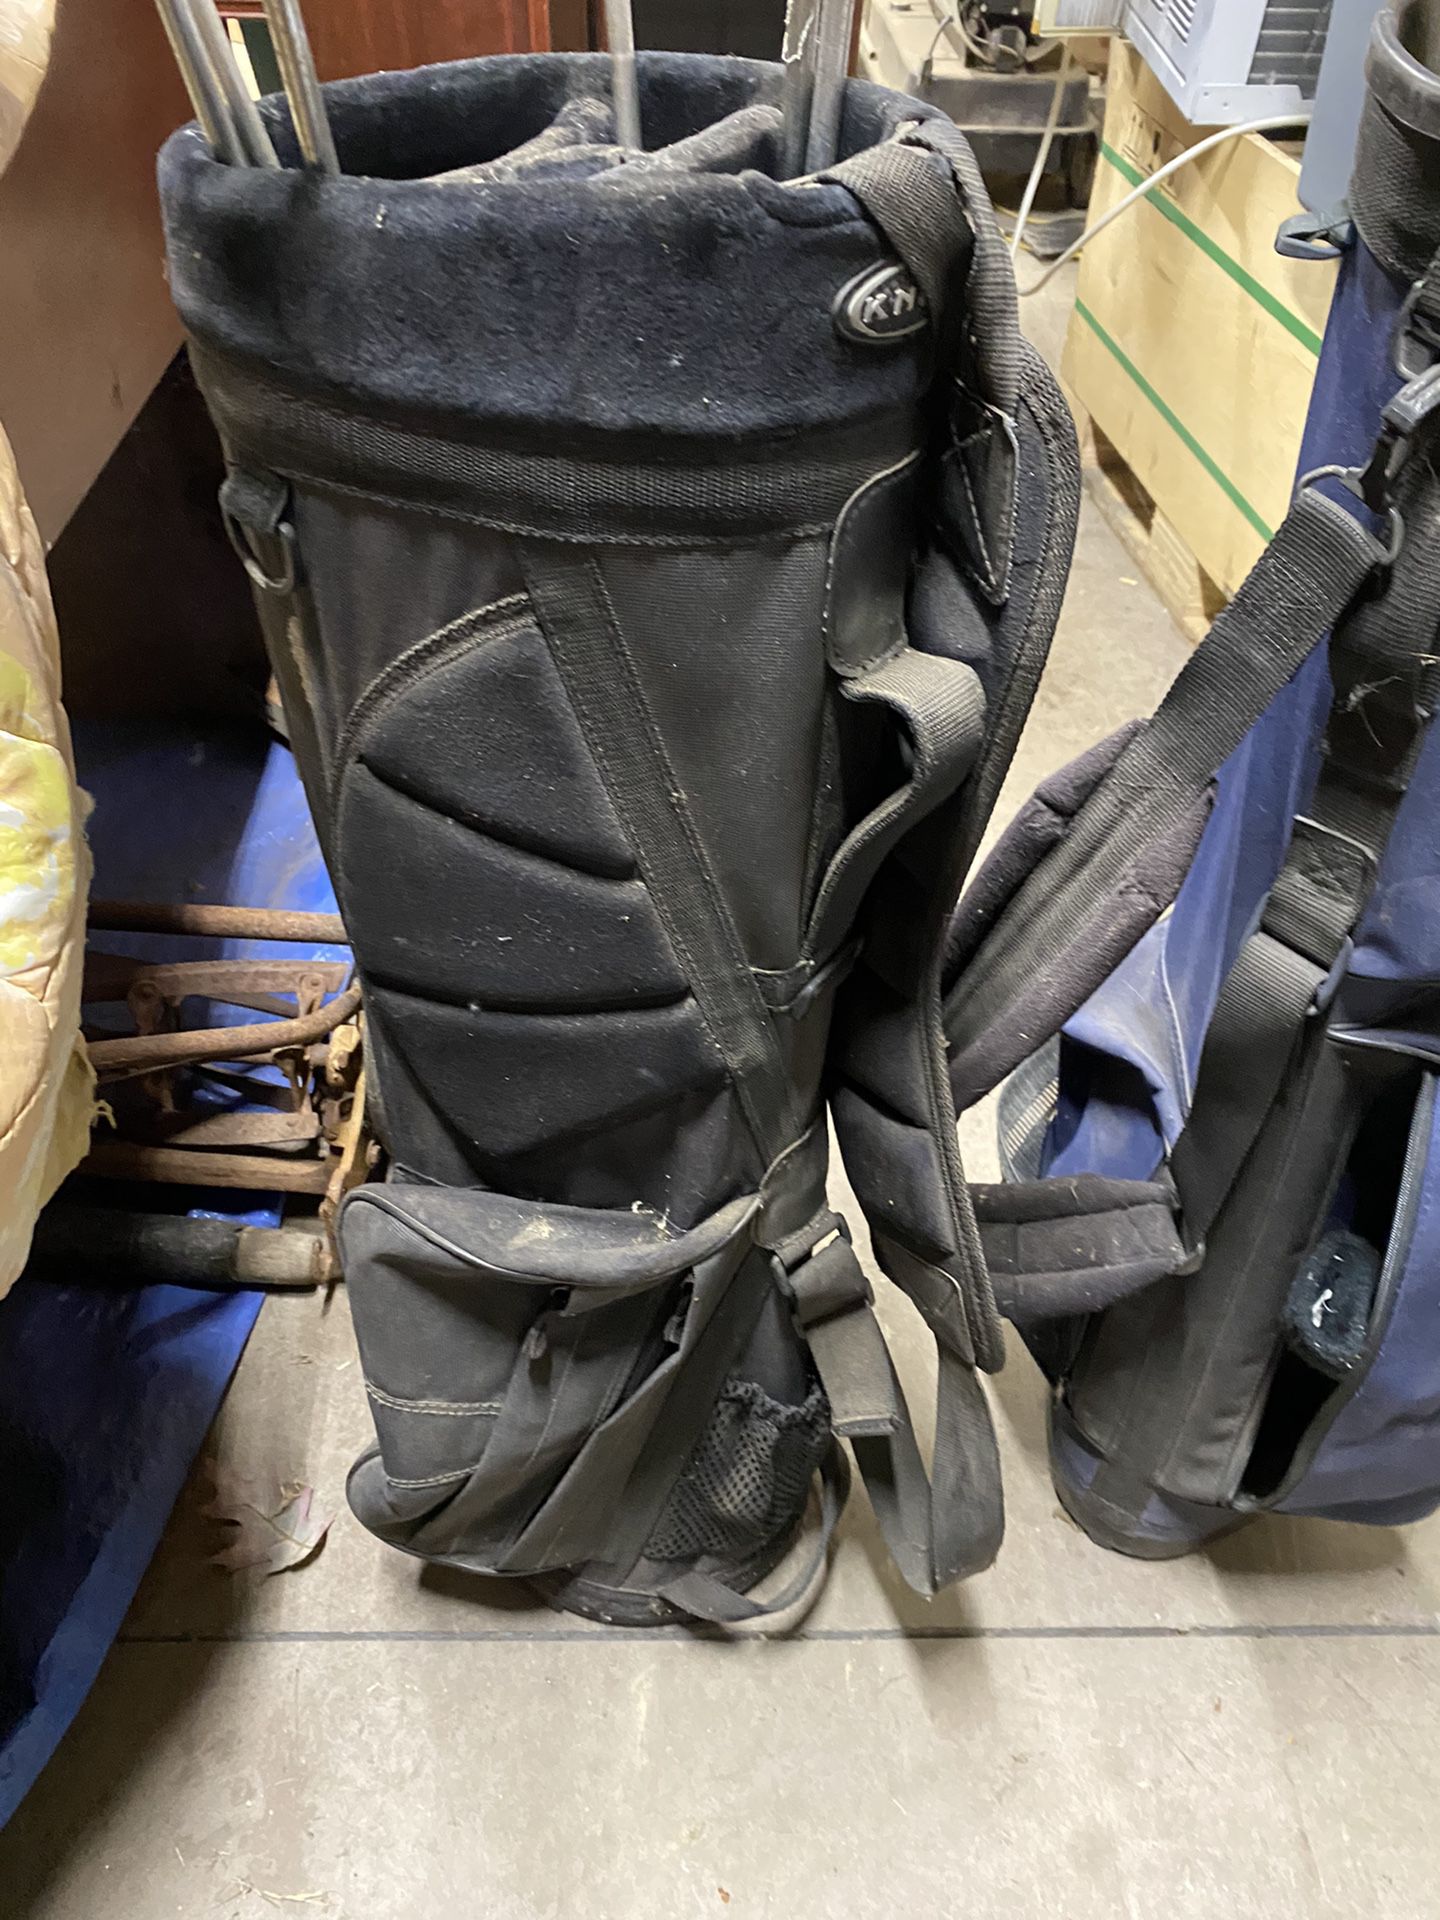 Golf Bags/clubs